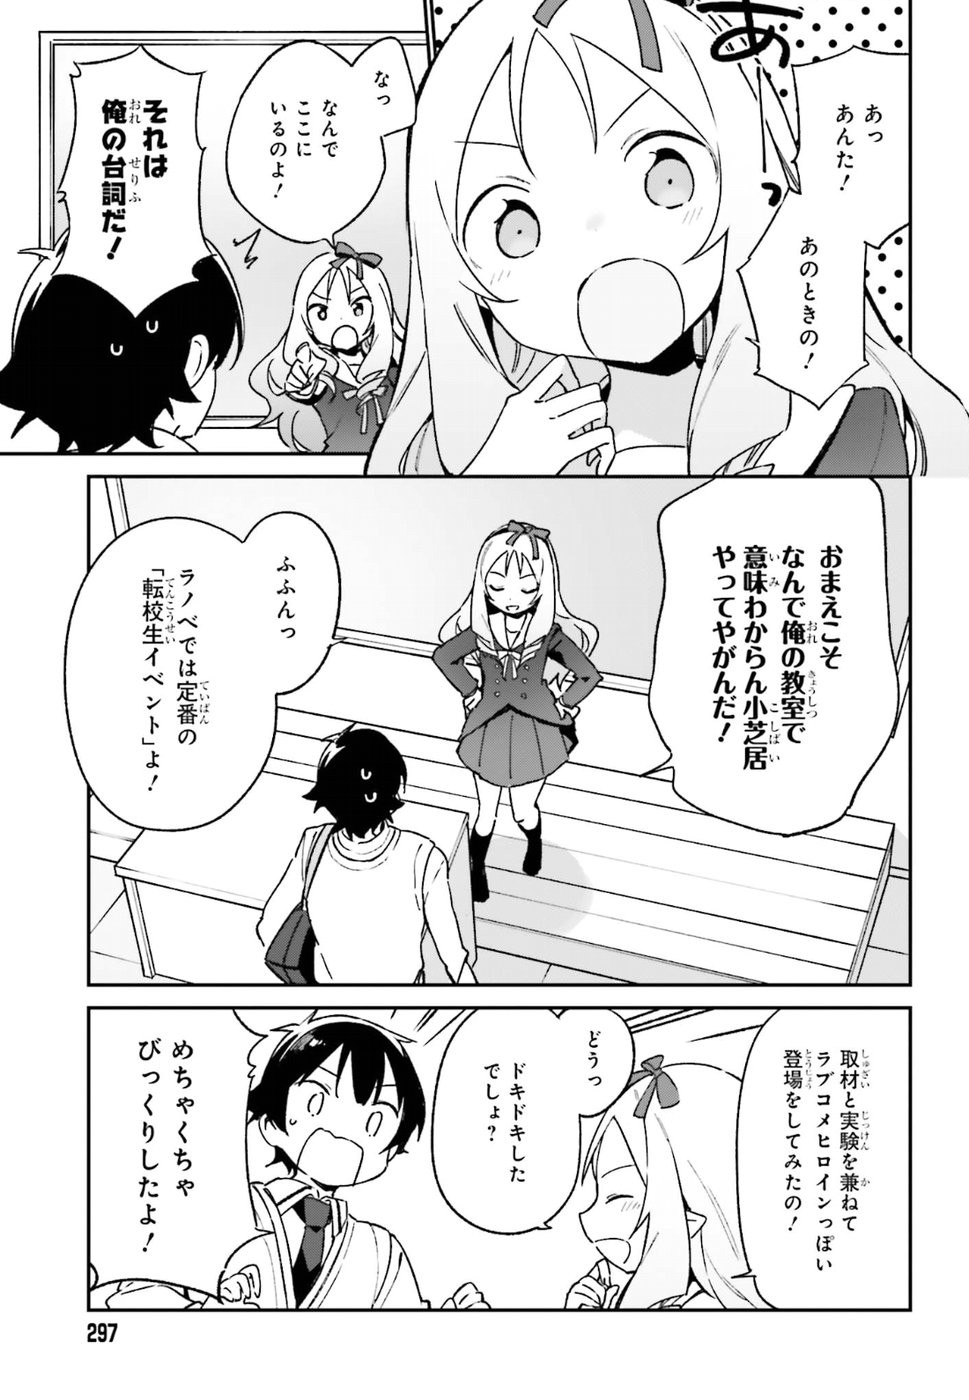 Ero Manga Sensei - Chapter 51 - Page 5